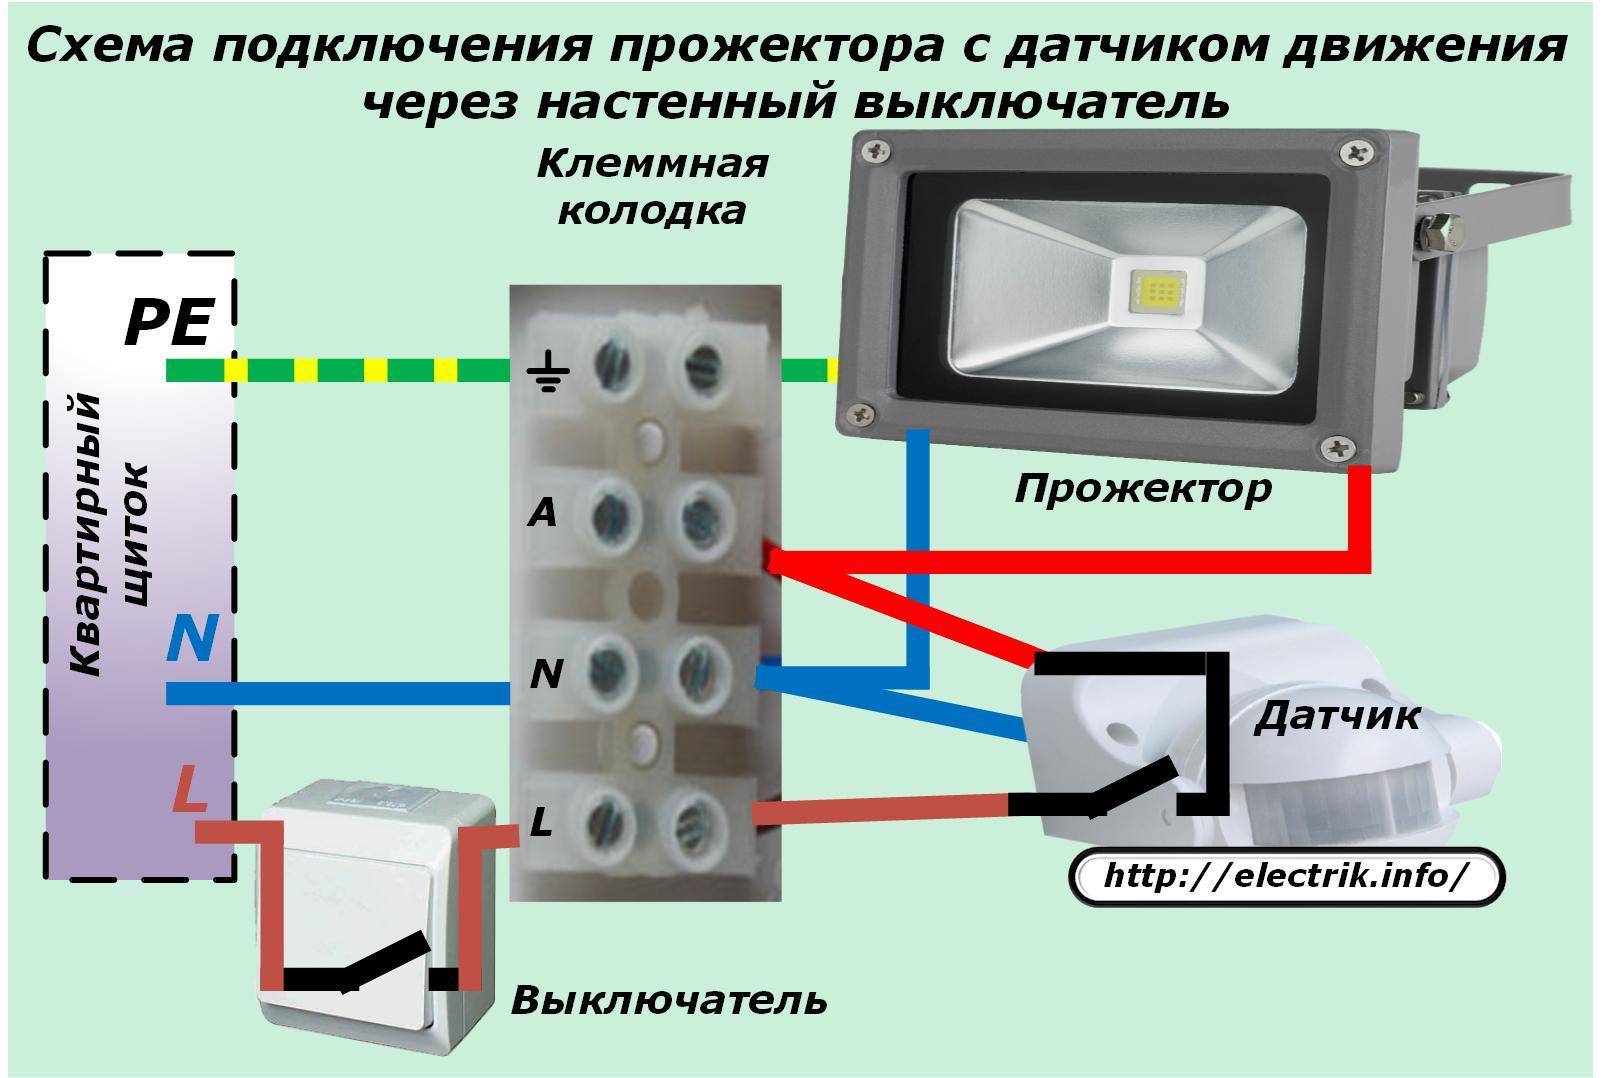 Как подключить датчик движения к светодиодному прожектору - возможные схемы коммутации для освещения